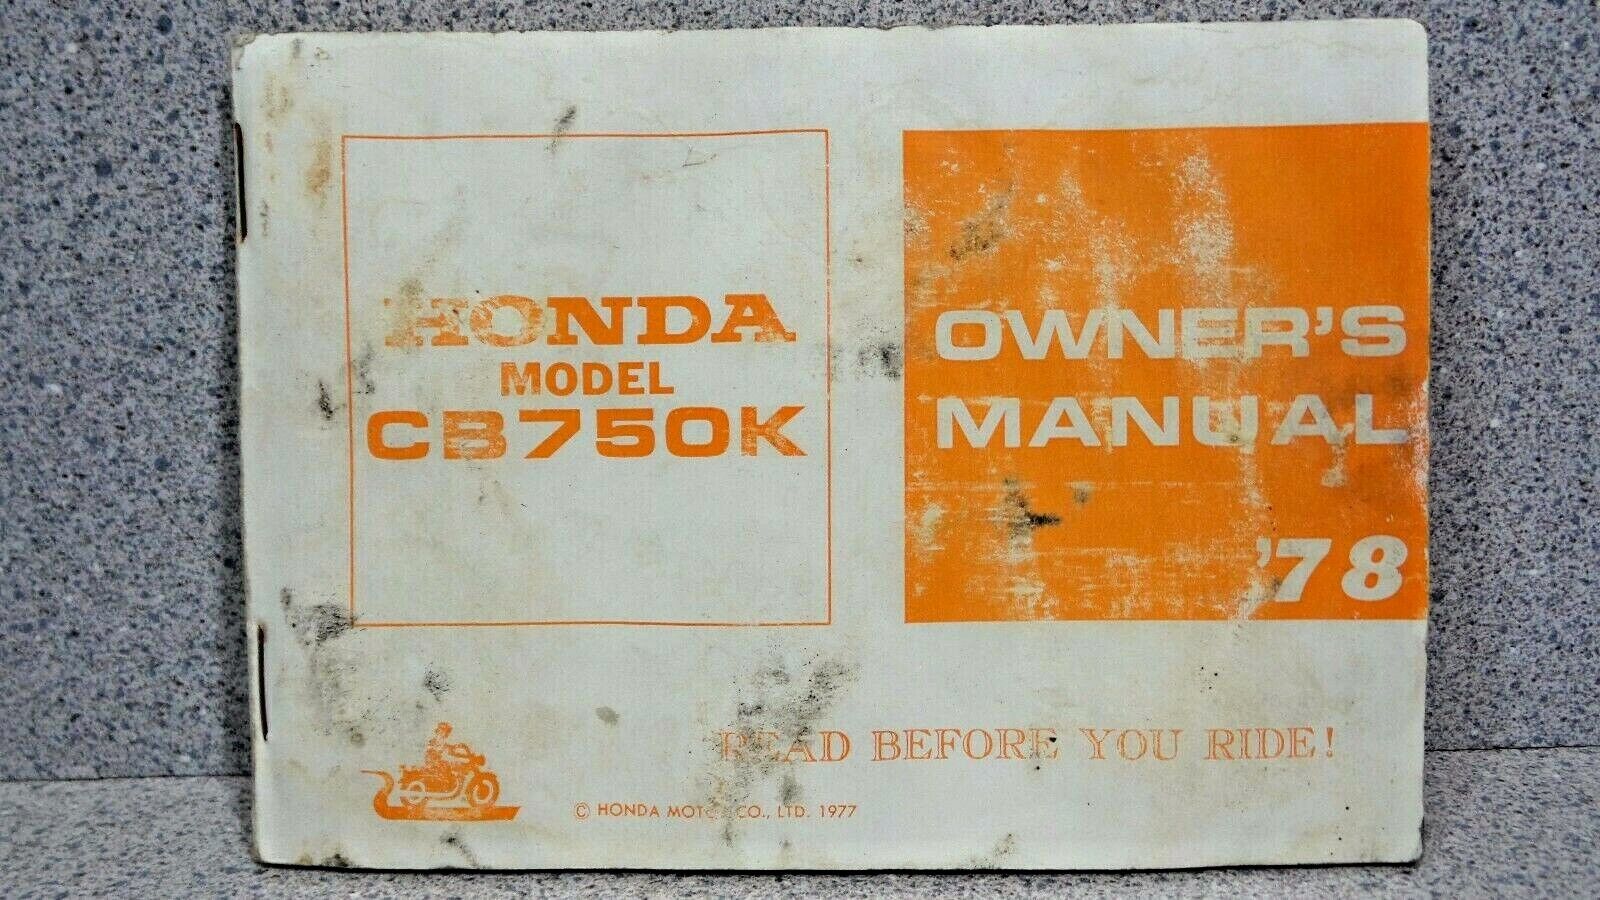 1978 HONDA CB750K CB 750 K SHOP SERVICE OWNER'S MANUAL specialty Max 82% OFF shop